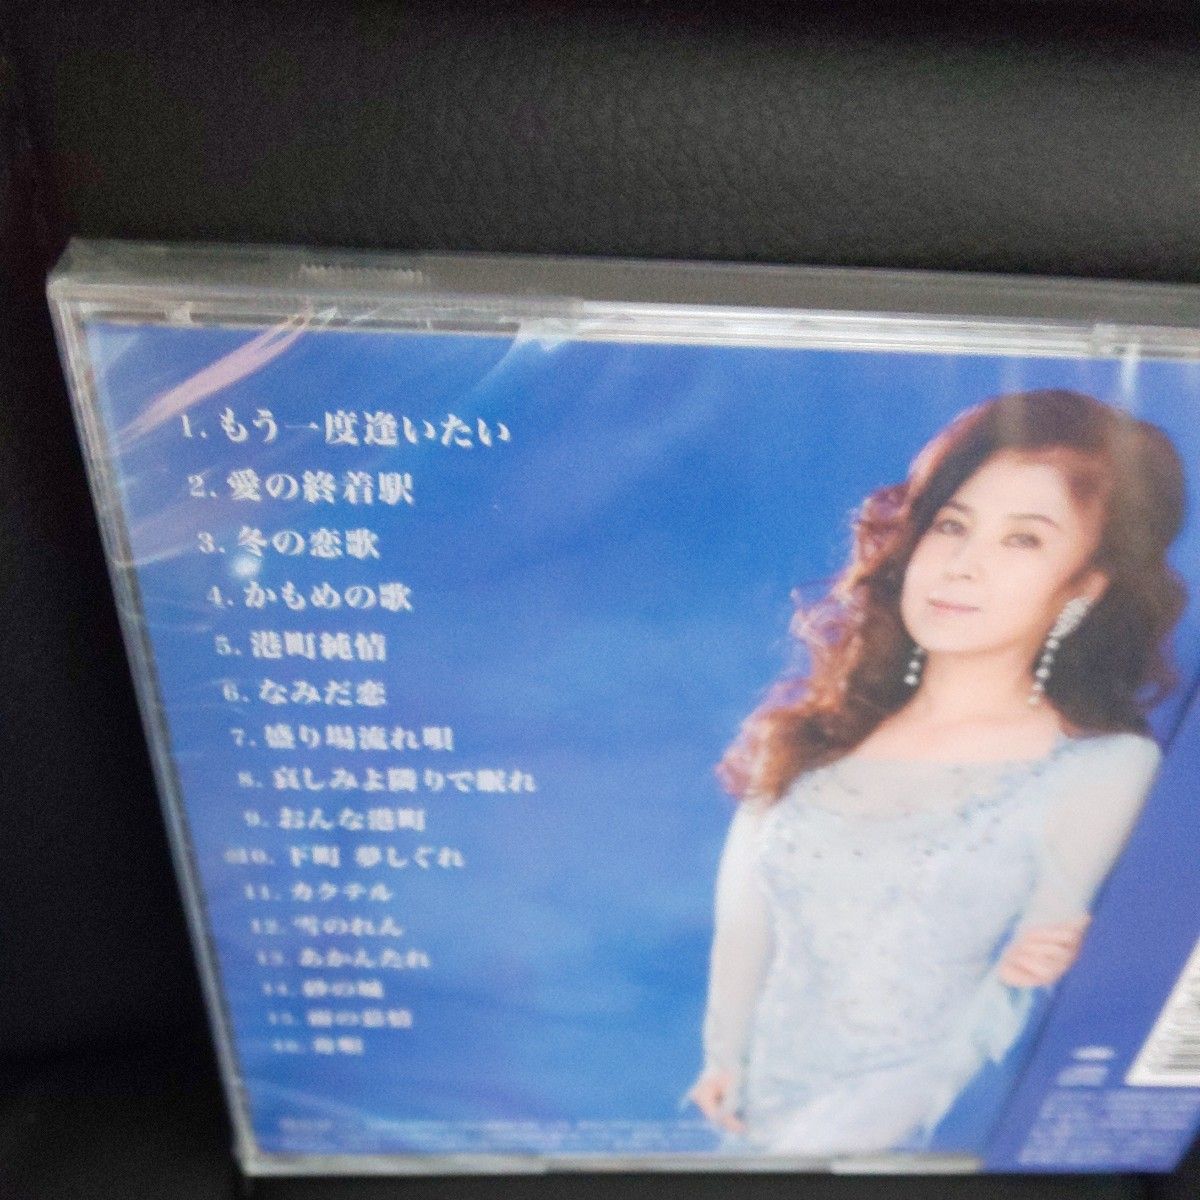 『八代亜紀全曲集 2020』ベストCD.#雨の慕情#舟唄#かもめの歌 収録